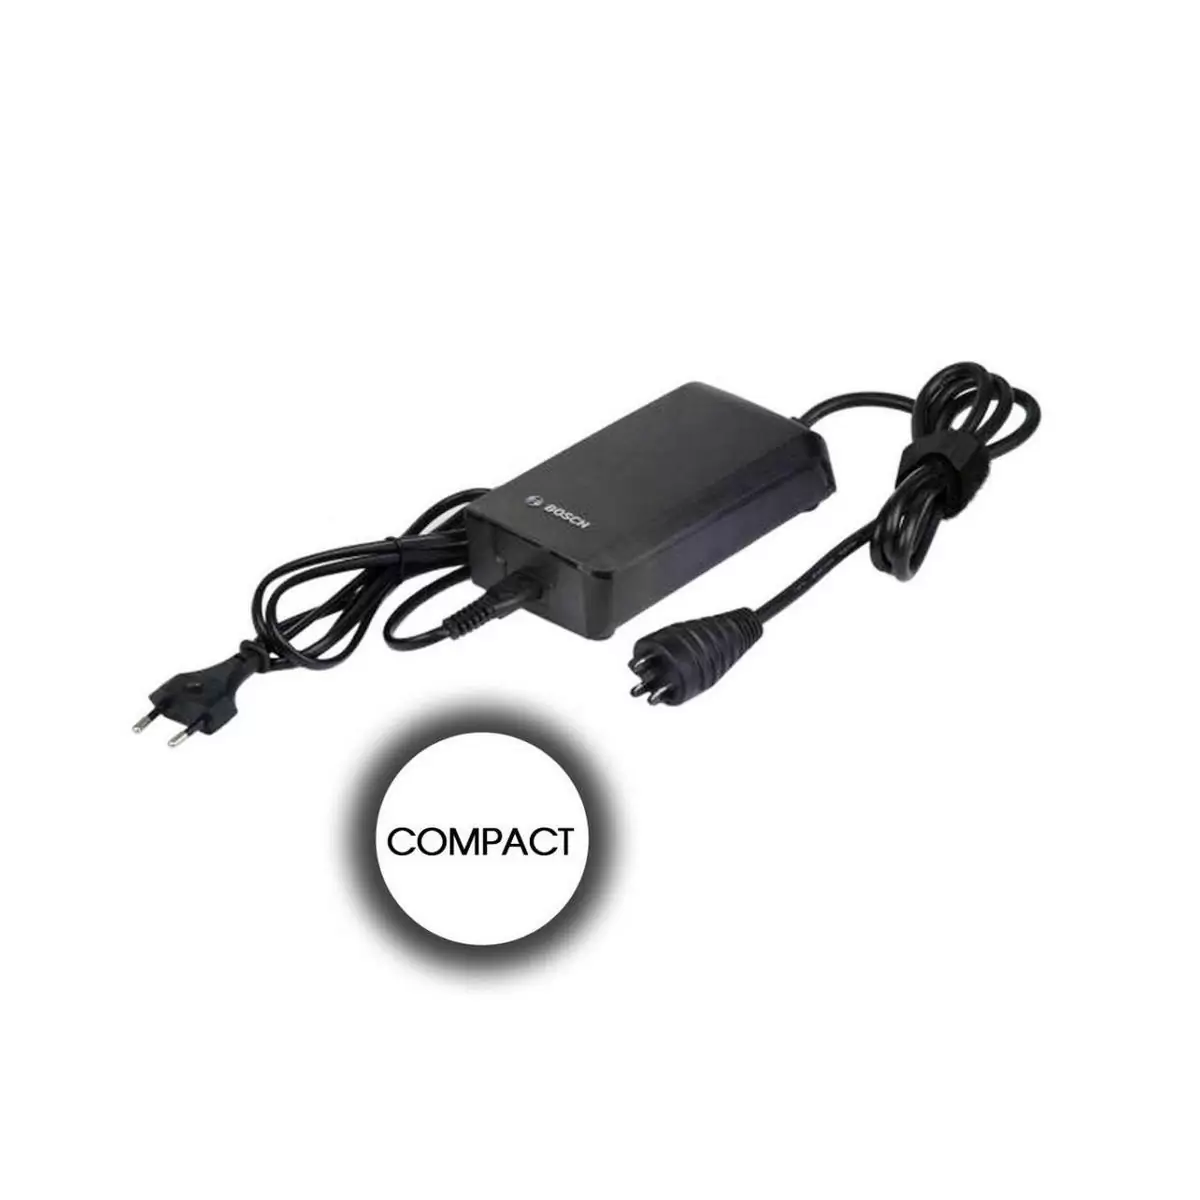 carregador de bateria compacto 2a plugue de cabo europeu de desempenho ativo - image